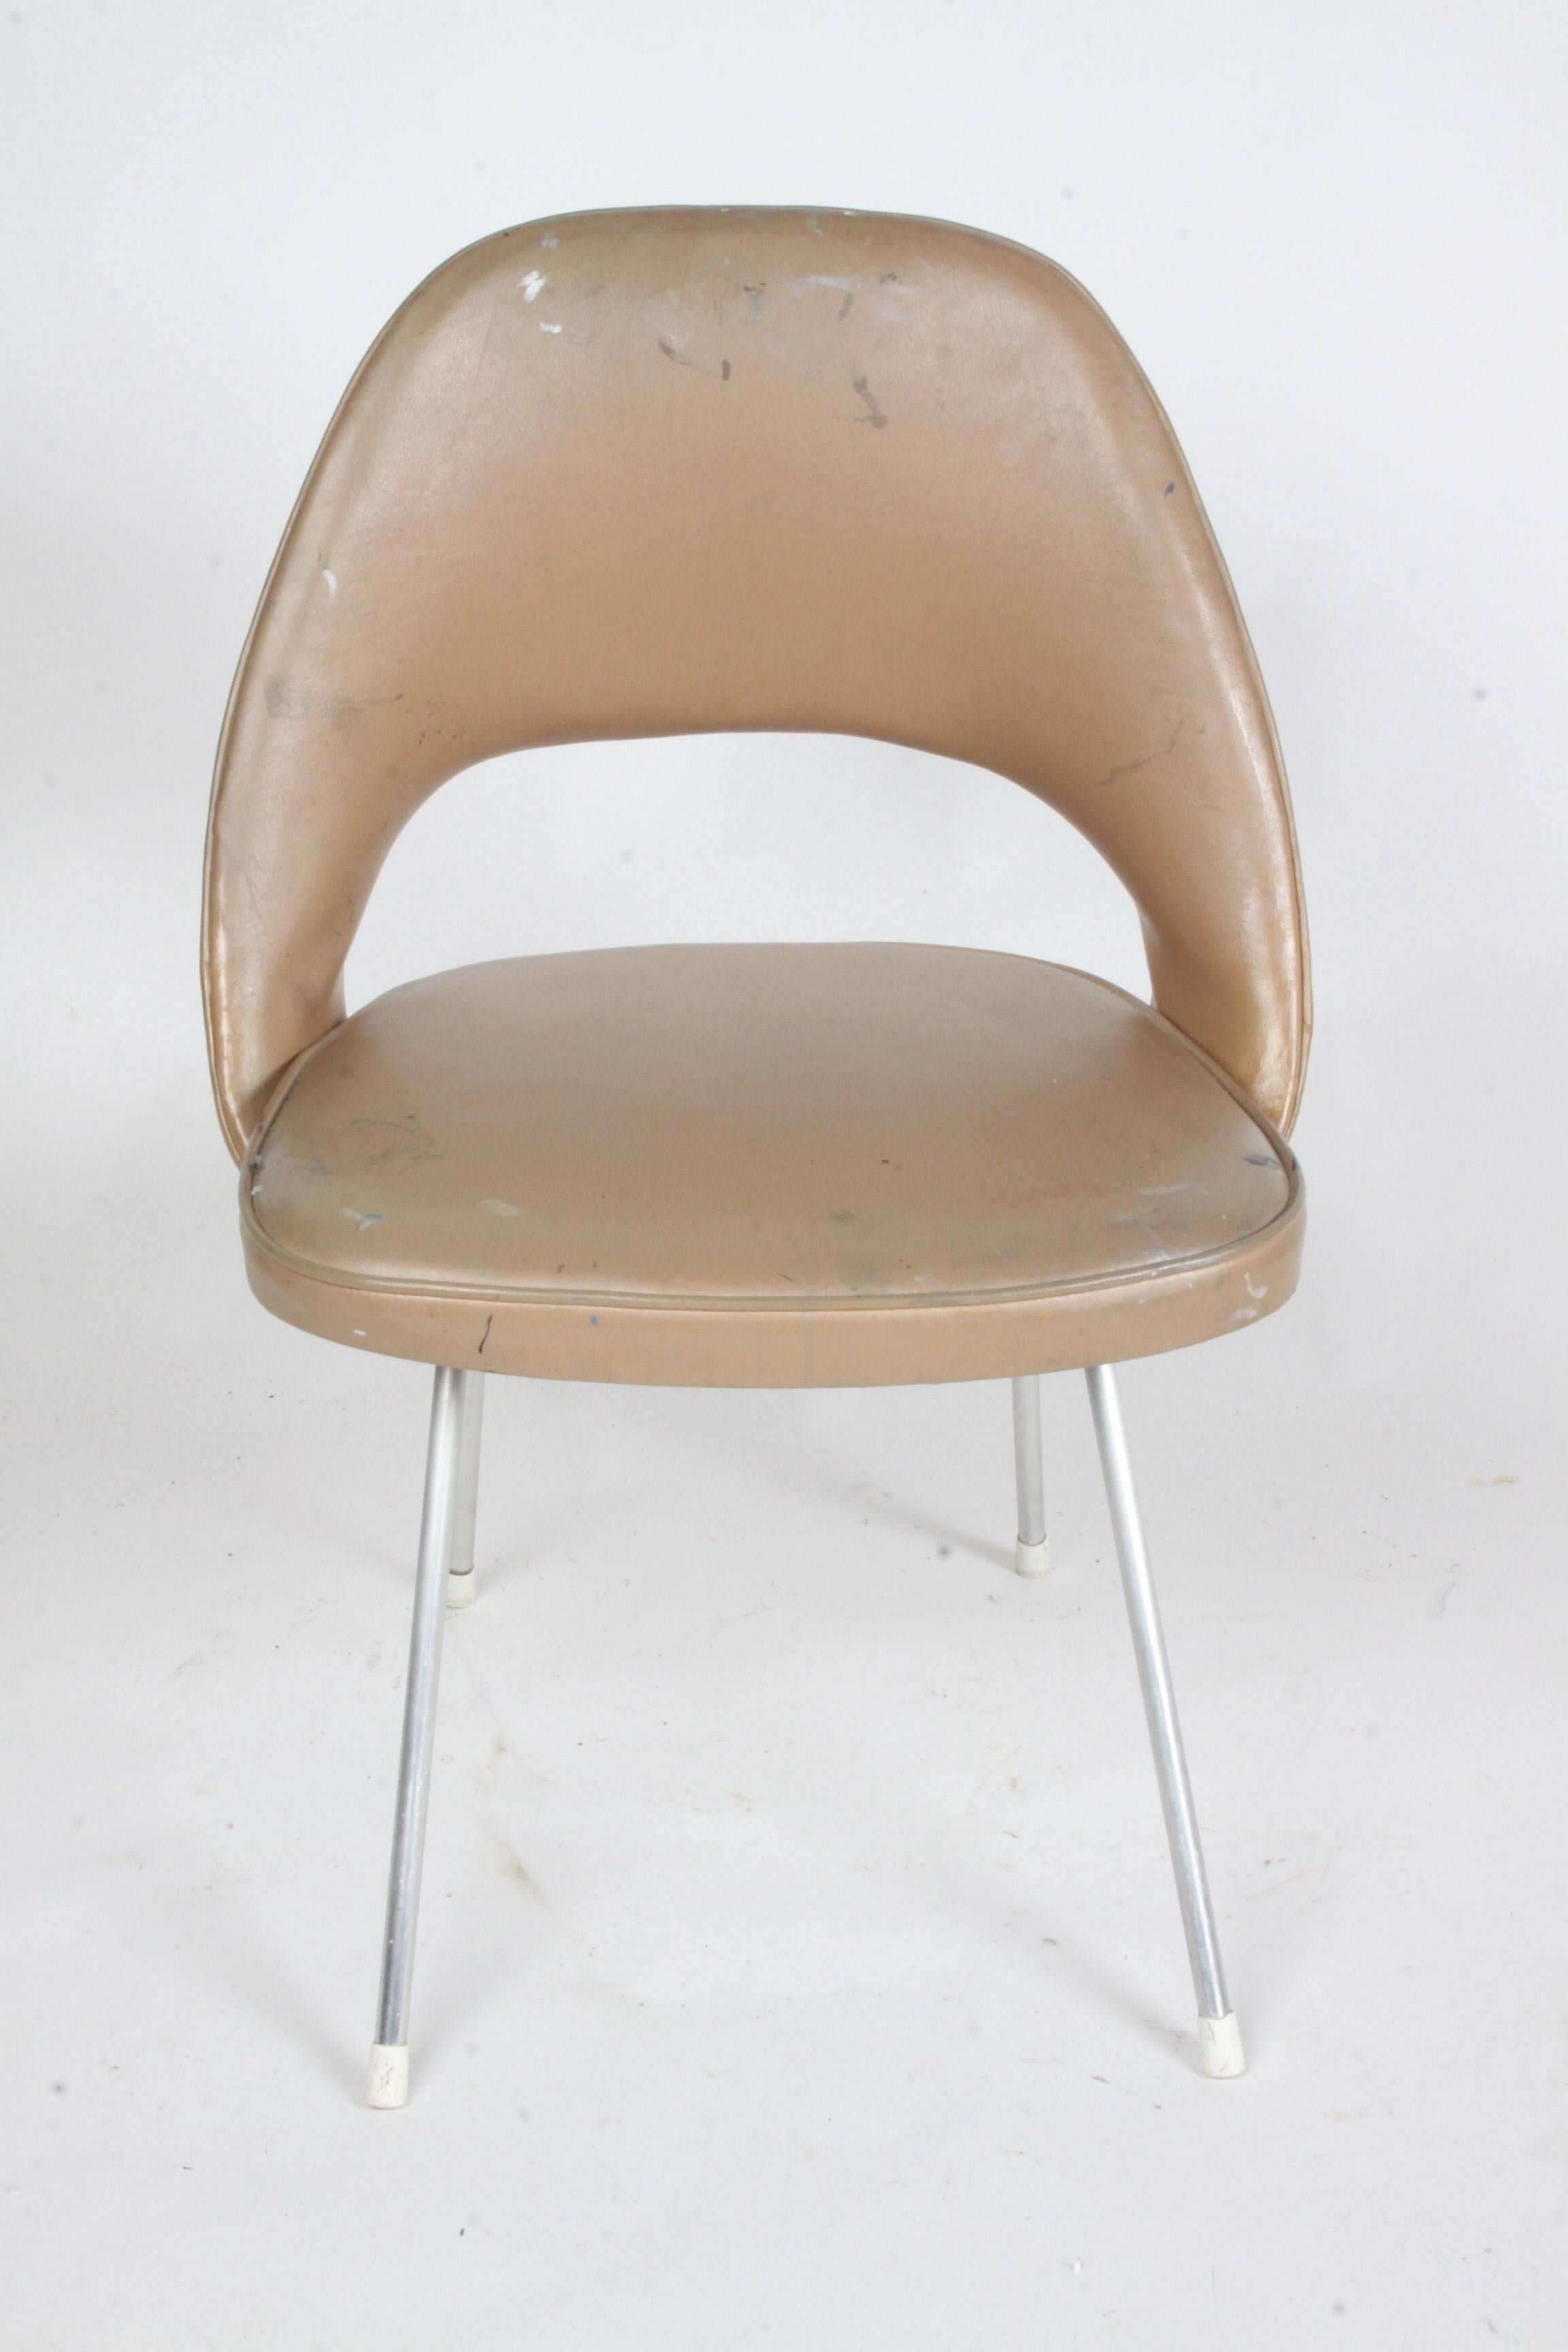 Ancienne version de la chaise d'appoint d'Eero Saarinen pour Knoll avec étiquette ancienne. Cette version a des pieds en aluminium et une configuration de base précoce, contrairement aux pieds segmentés ultérieurs. La chaise doit être récupérée, la